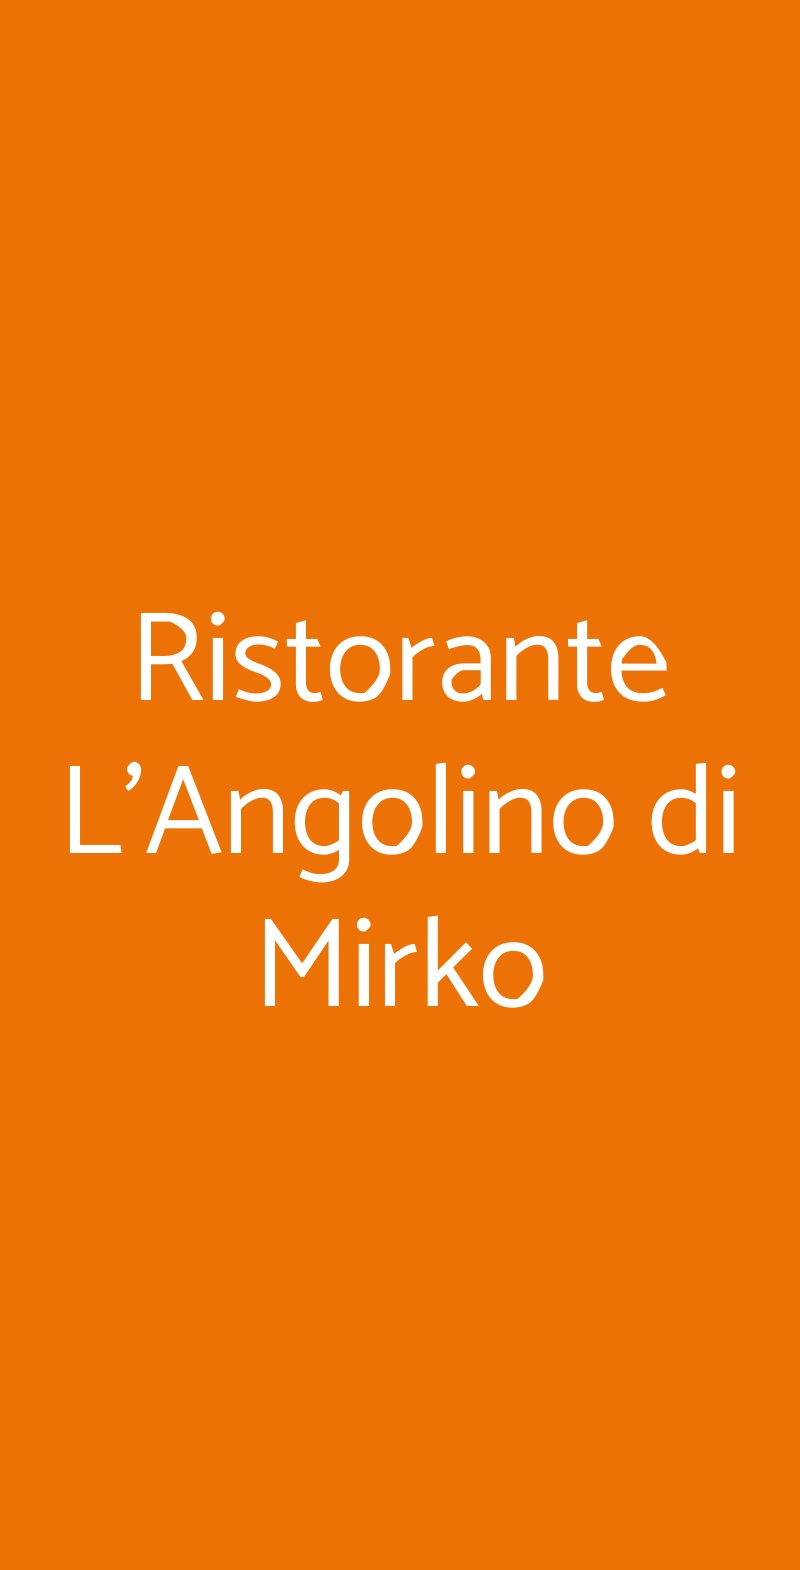 Ristorante L'Angolino di Mirko Tivoli menù 1 pagina